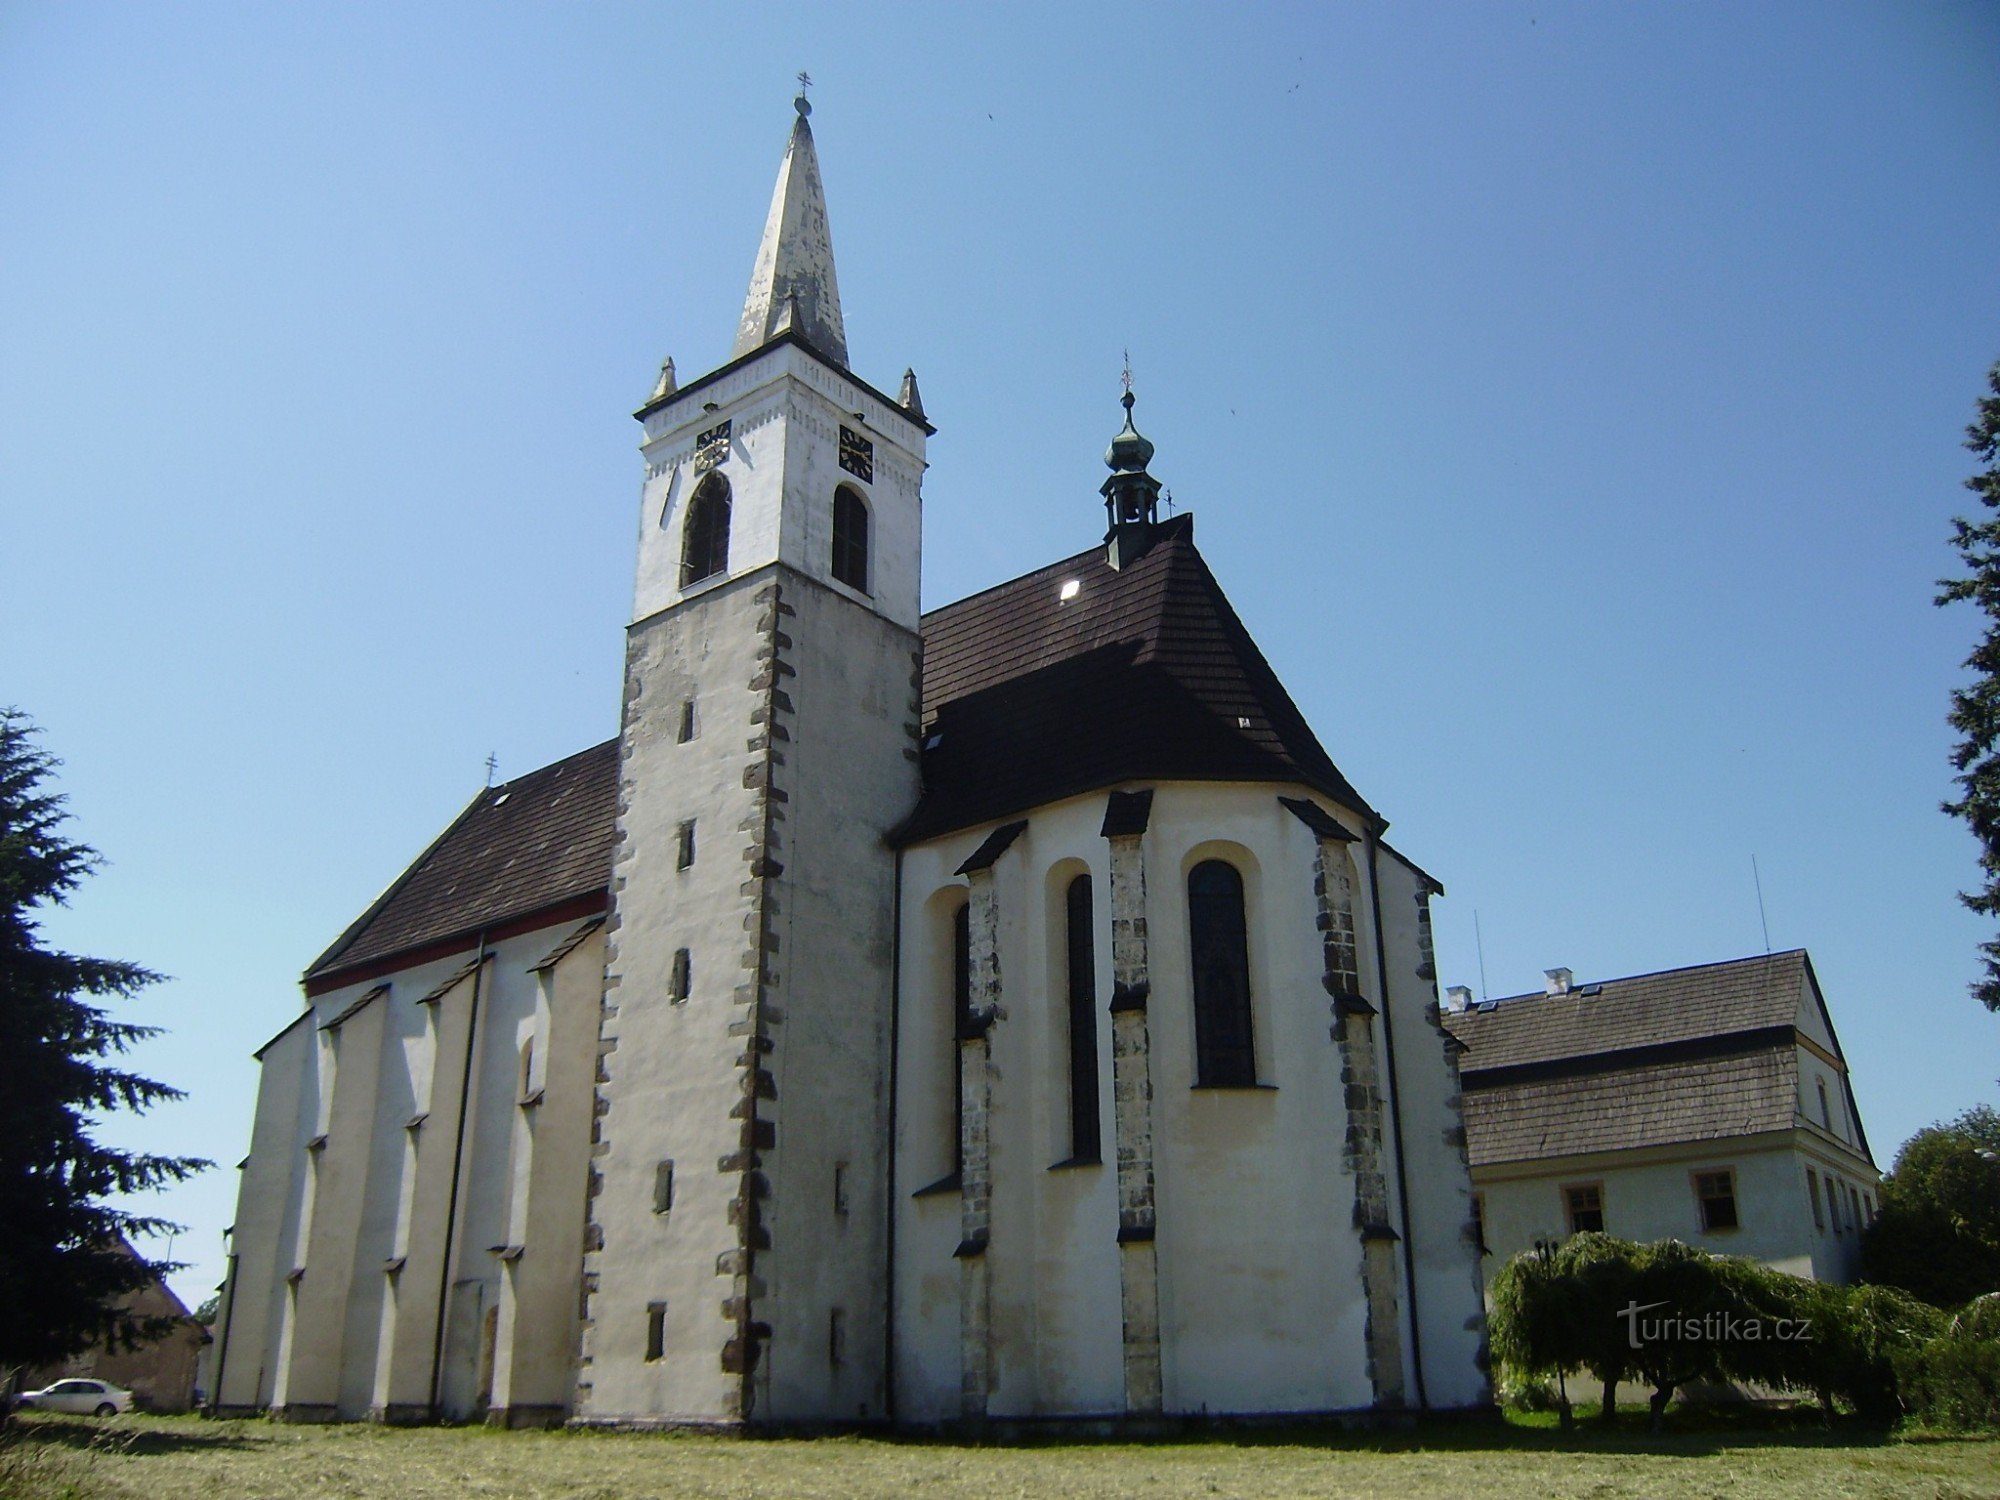 Miličín - Church of the Nativity of P. Mary